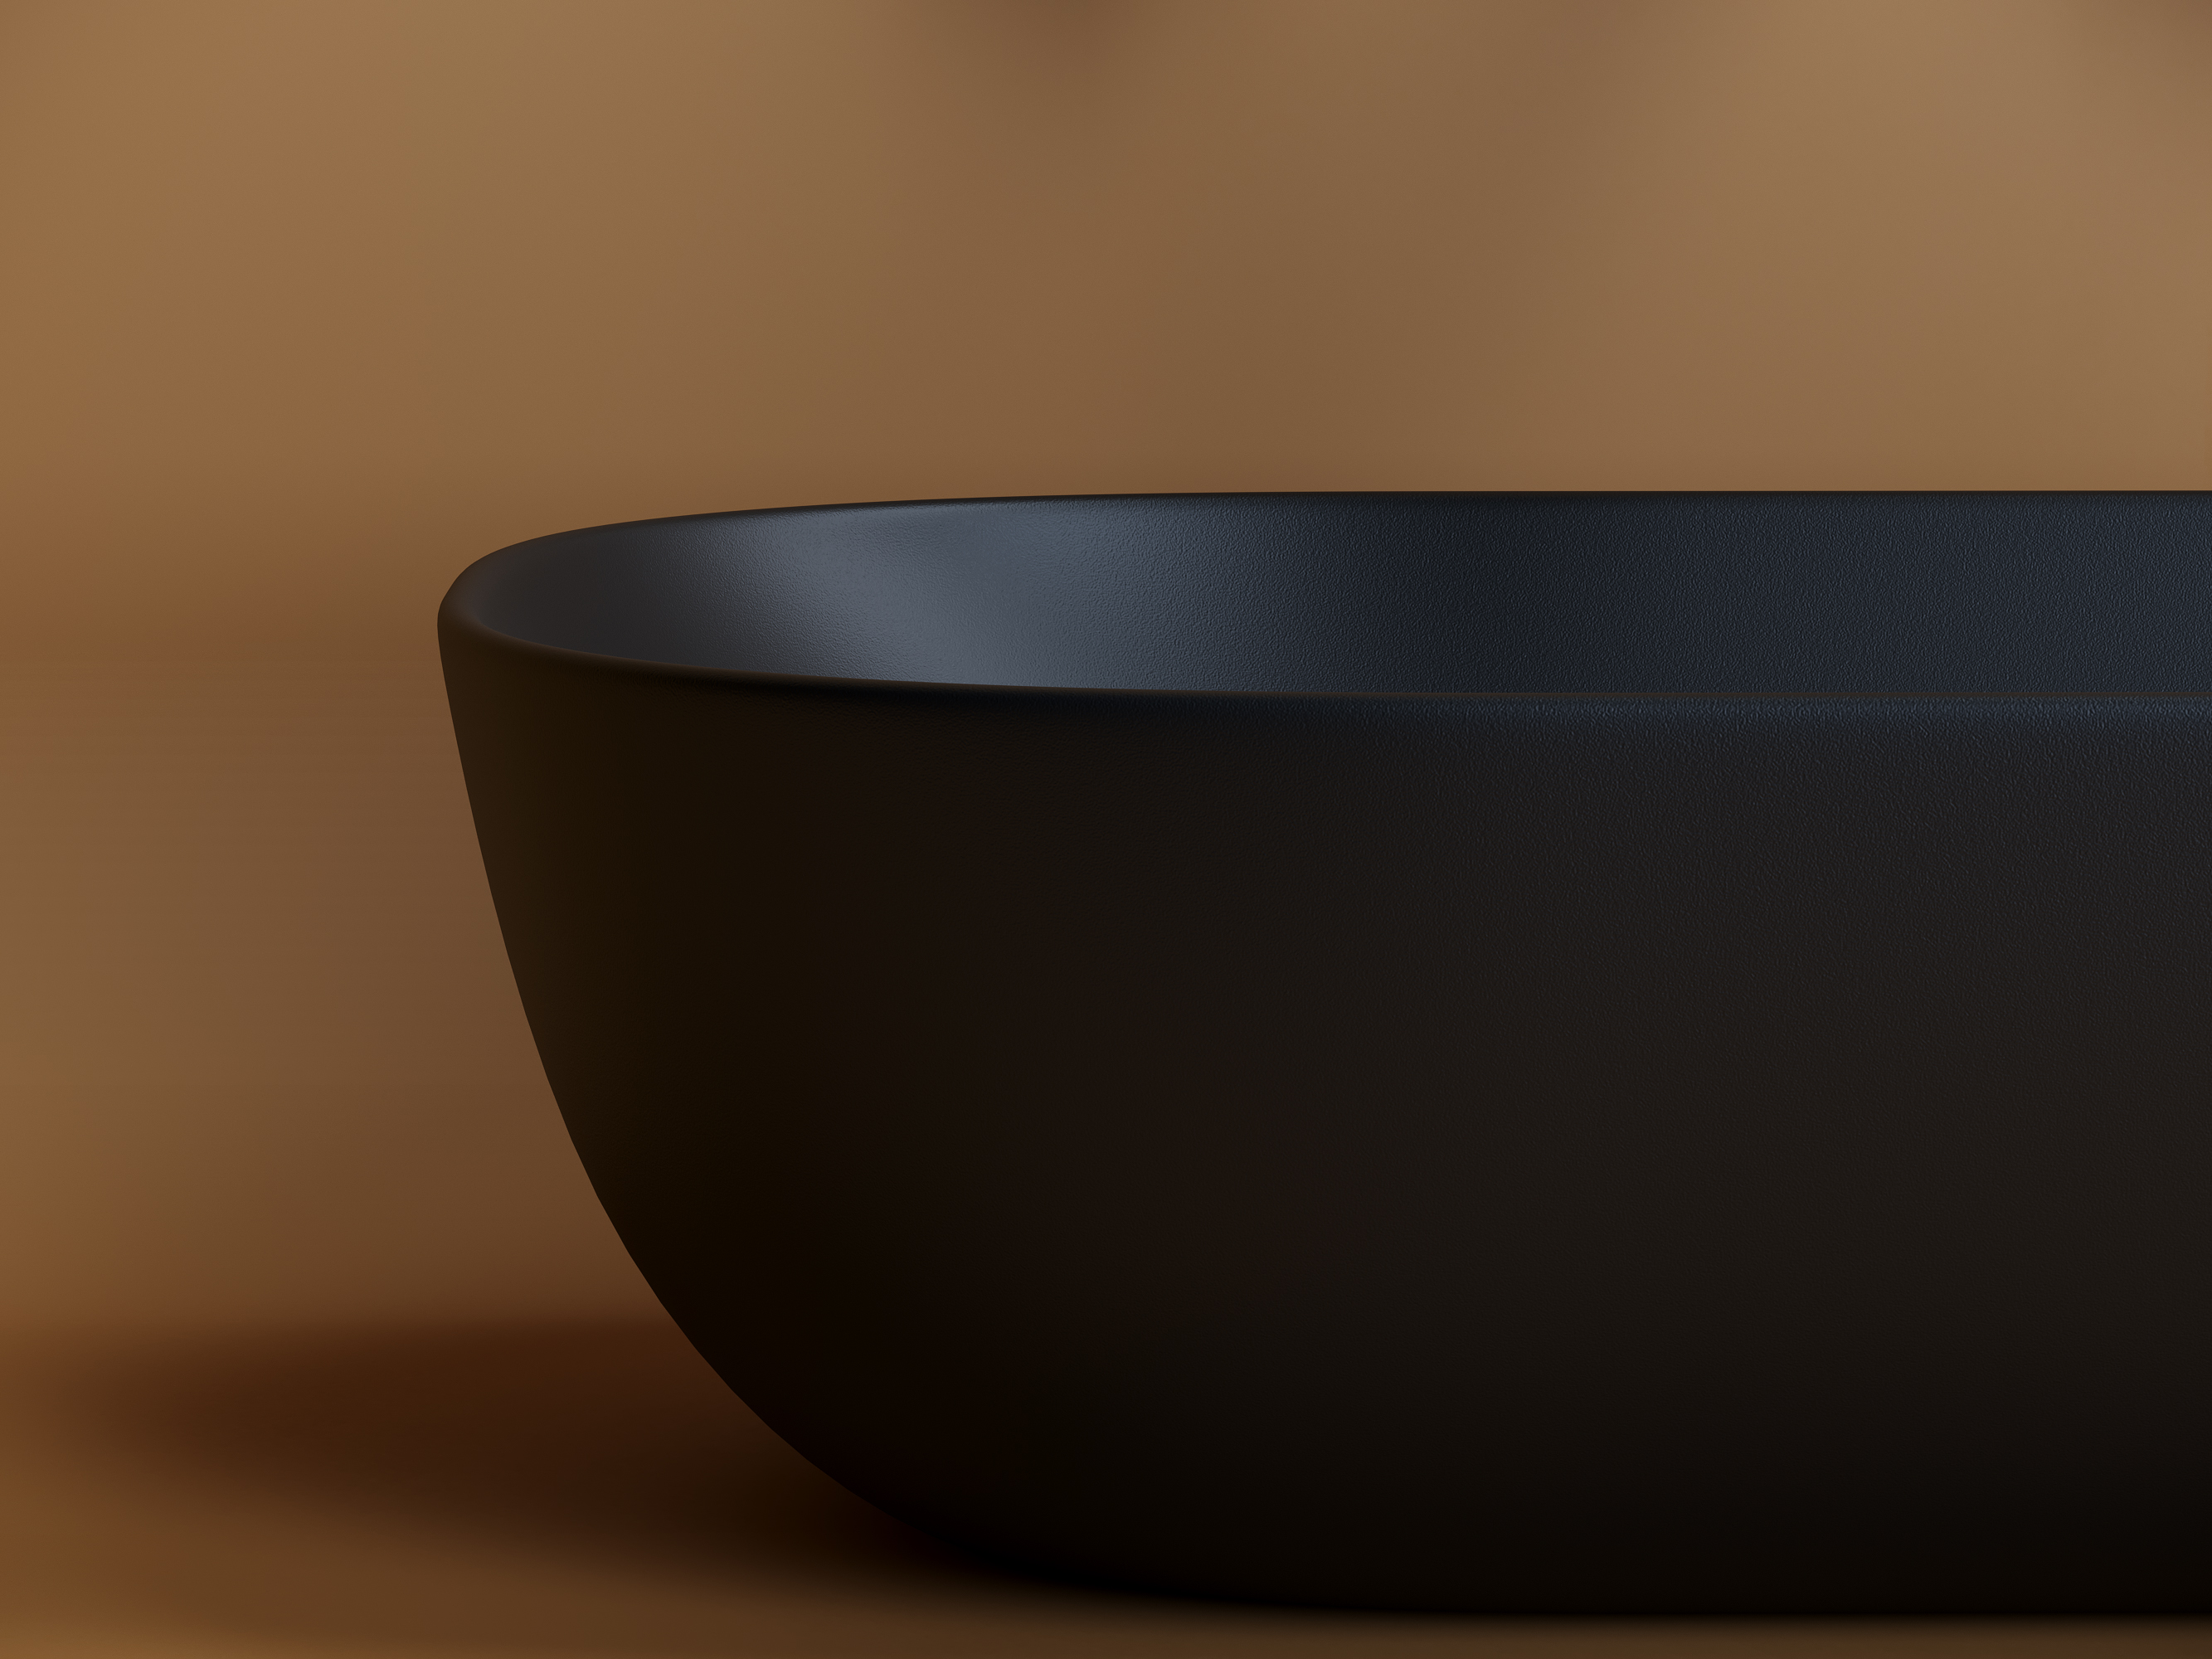 Умывальник чаша накладная прямоугольная (цвет Чёрный Матовый) Element 455*325*135мм Ceramica Nova CN6009MB